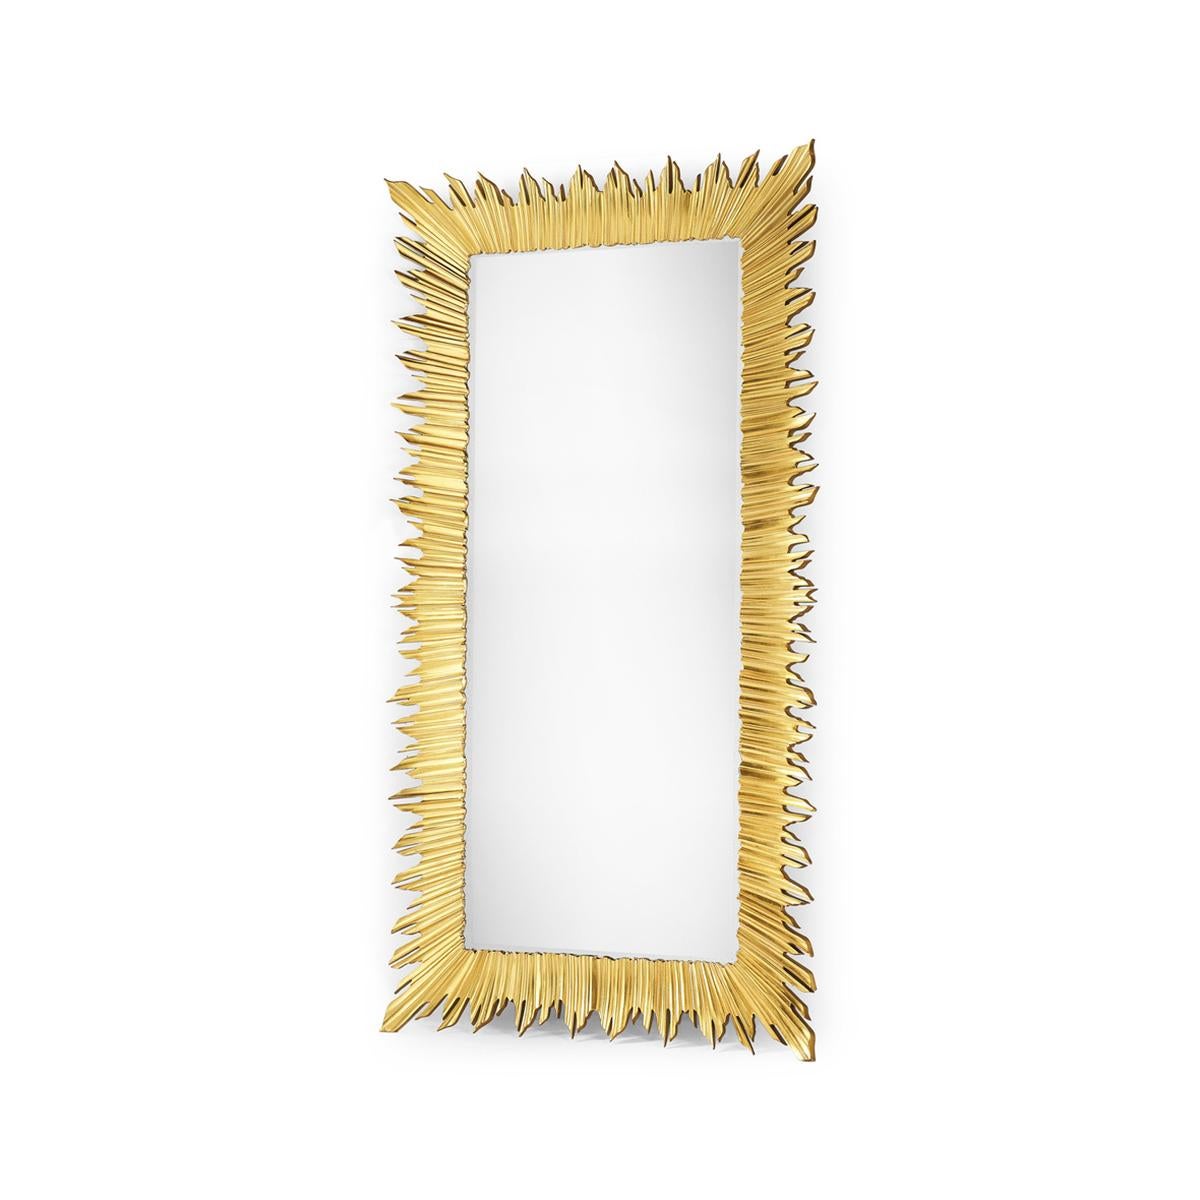 Miroir rectangulaire ensoleillé sur pied, finement détaillé et doré, avec une grande vitre centrale et de multiples 